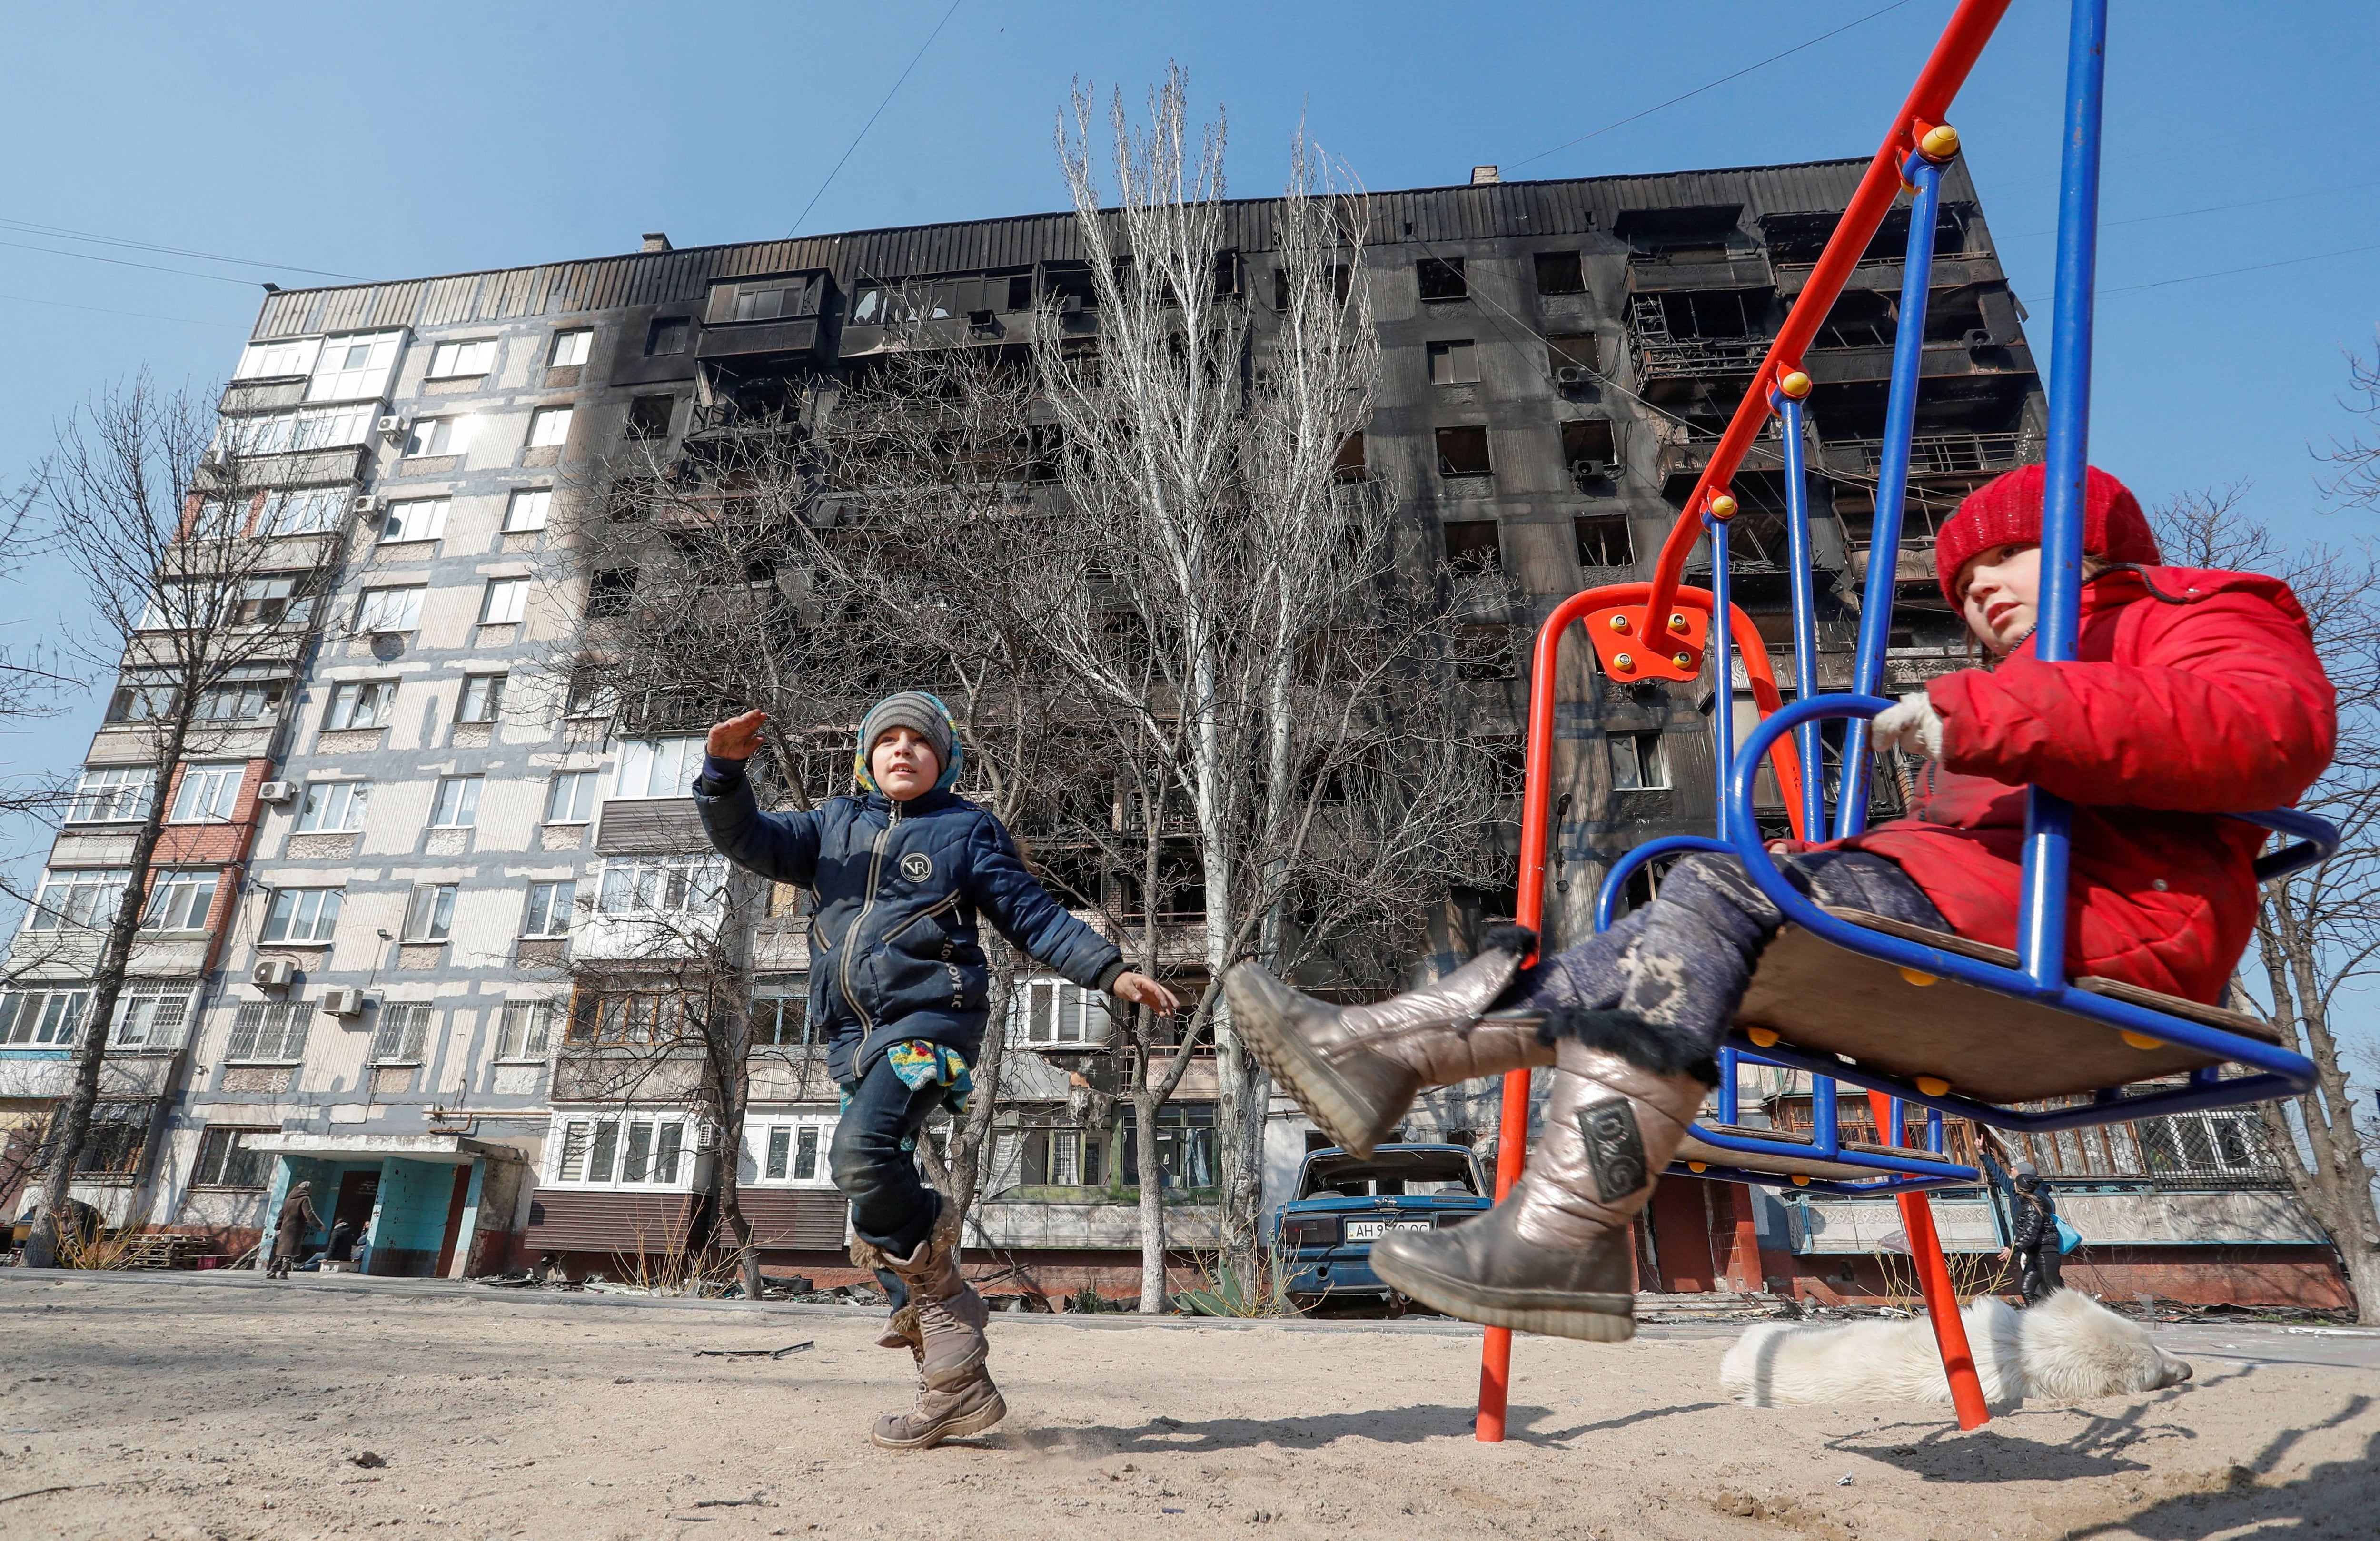 Los niños juegan frente a un edificio dañado en los combates en Mariupol, Ucrania, el 23 de marzo de 2022. (REUTERS/Alexander Ermochenko)